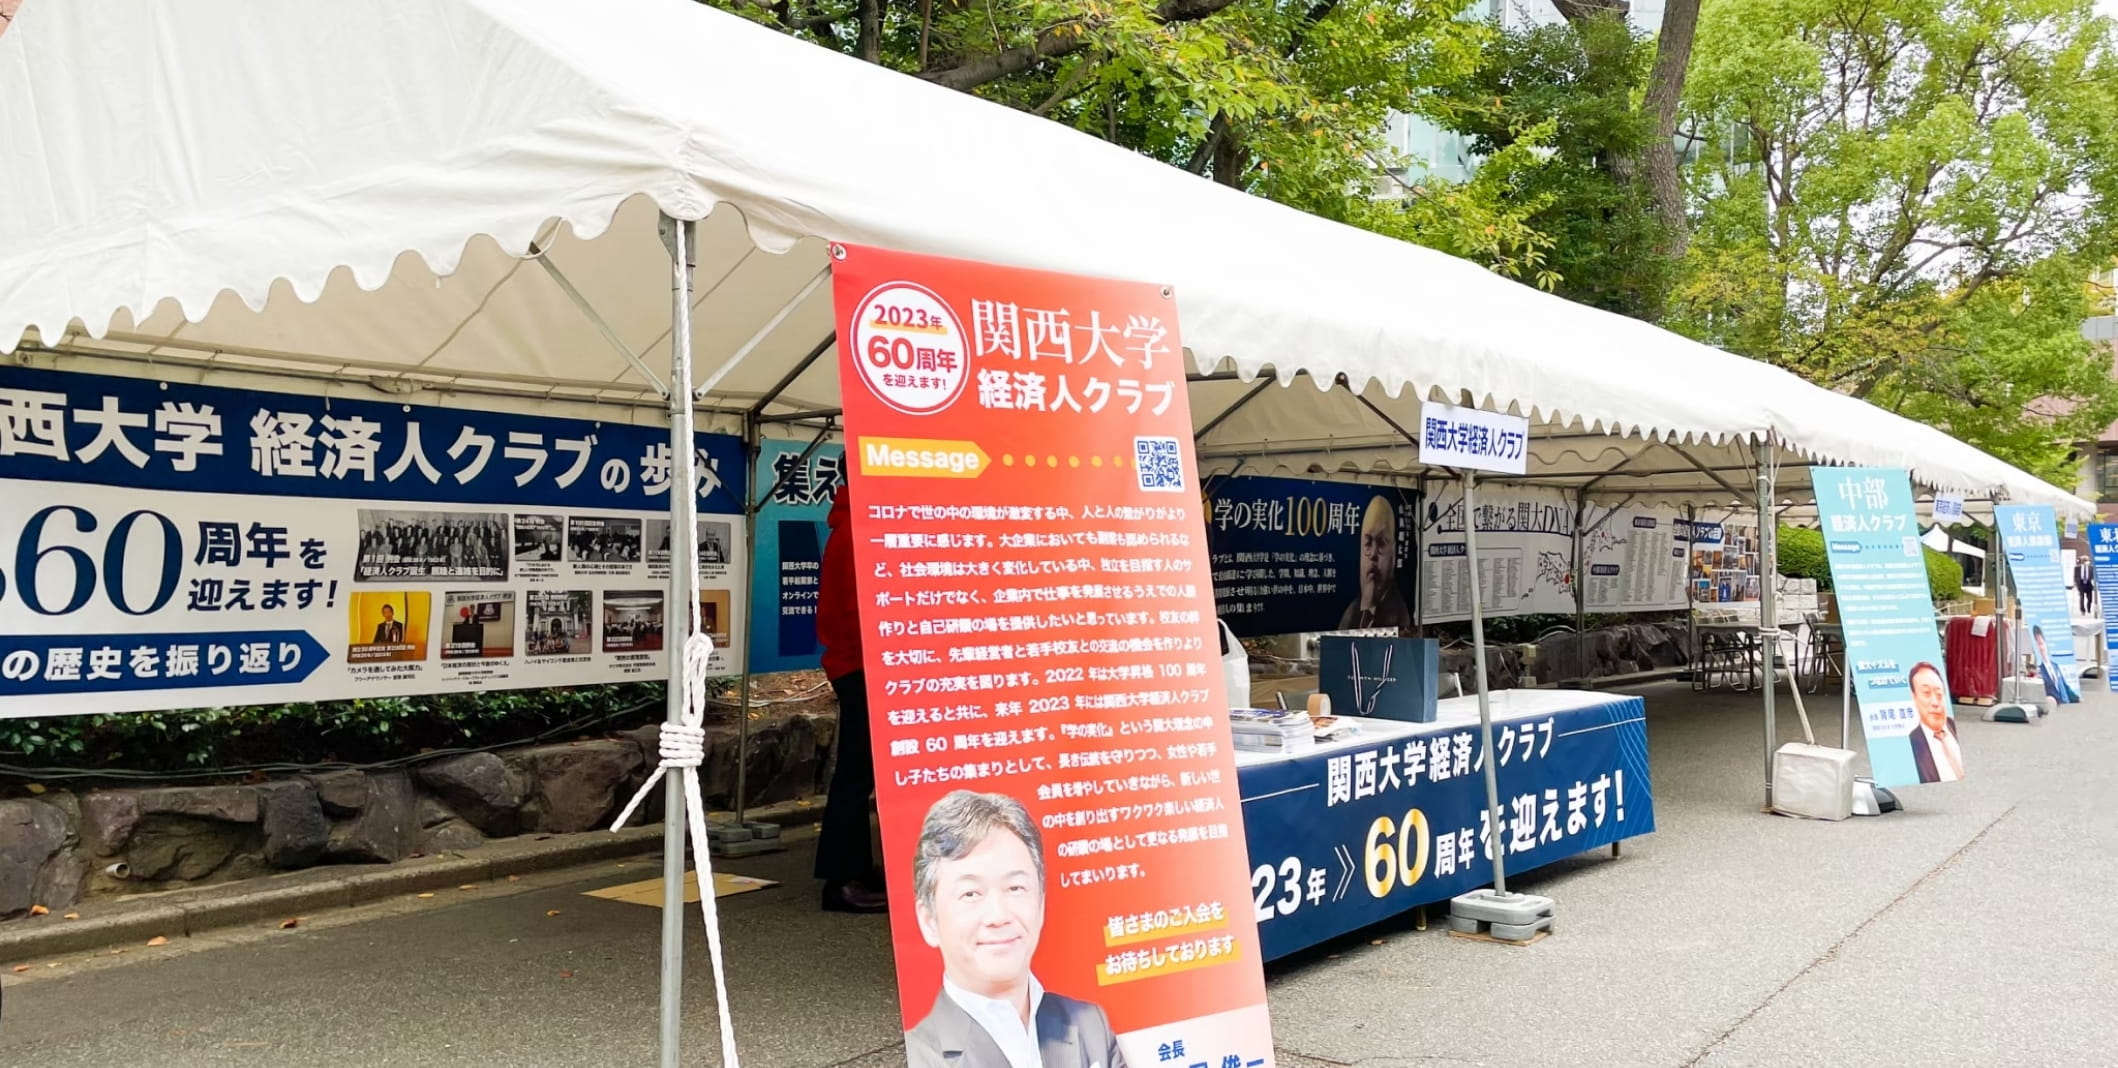 関西大学経済人クラブ100周年記念イベント企画ブースの様子